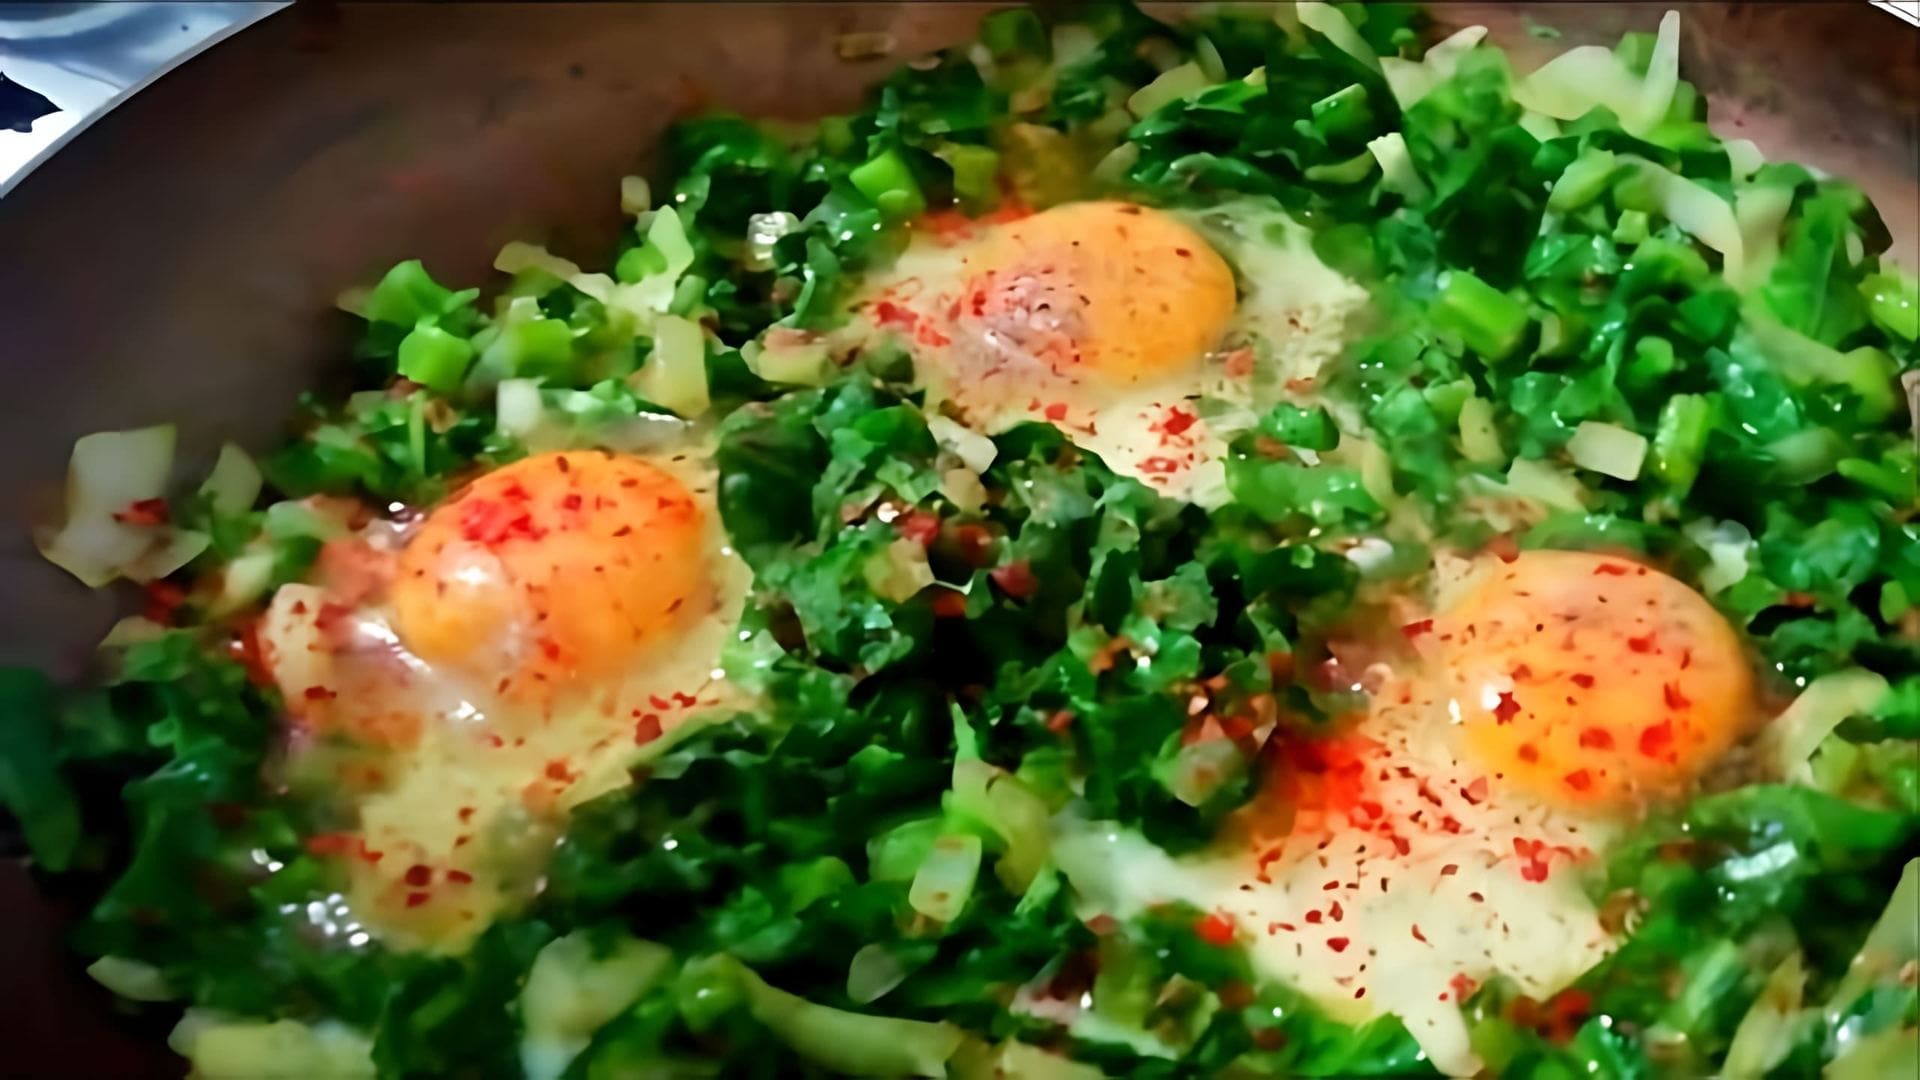 В этом видео демонстрируется рецепт турецкого завтрака, включающего яичницу с пазы (мангольд) и традиционный турецкий чай